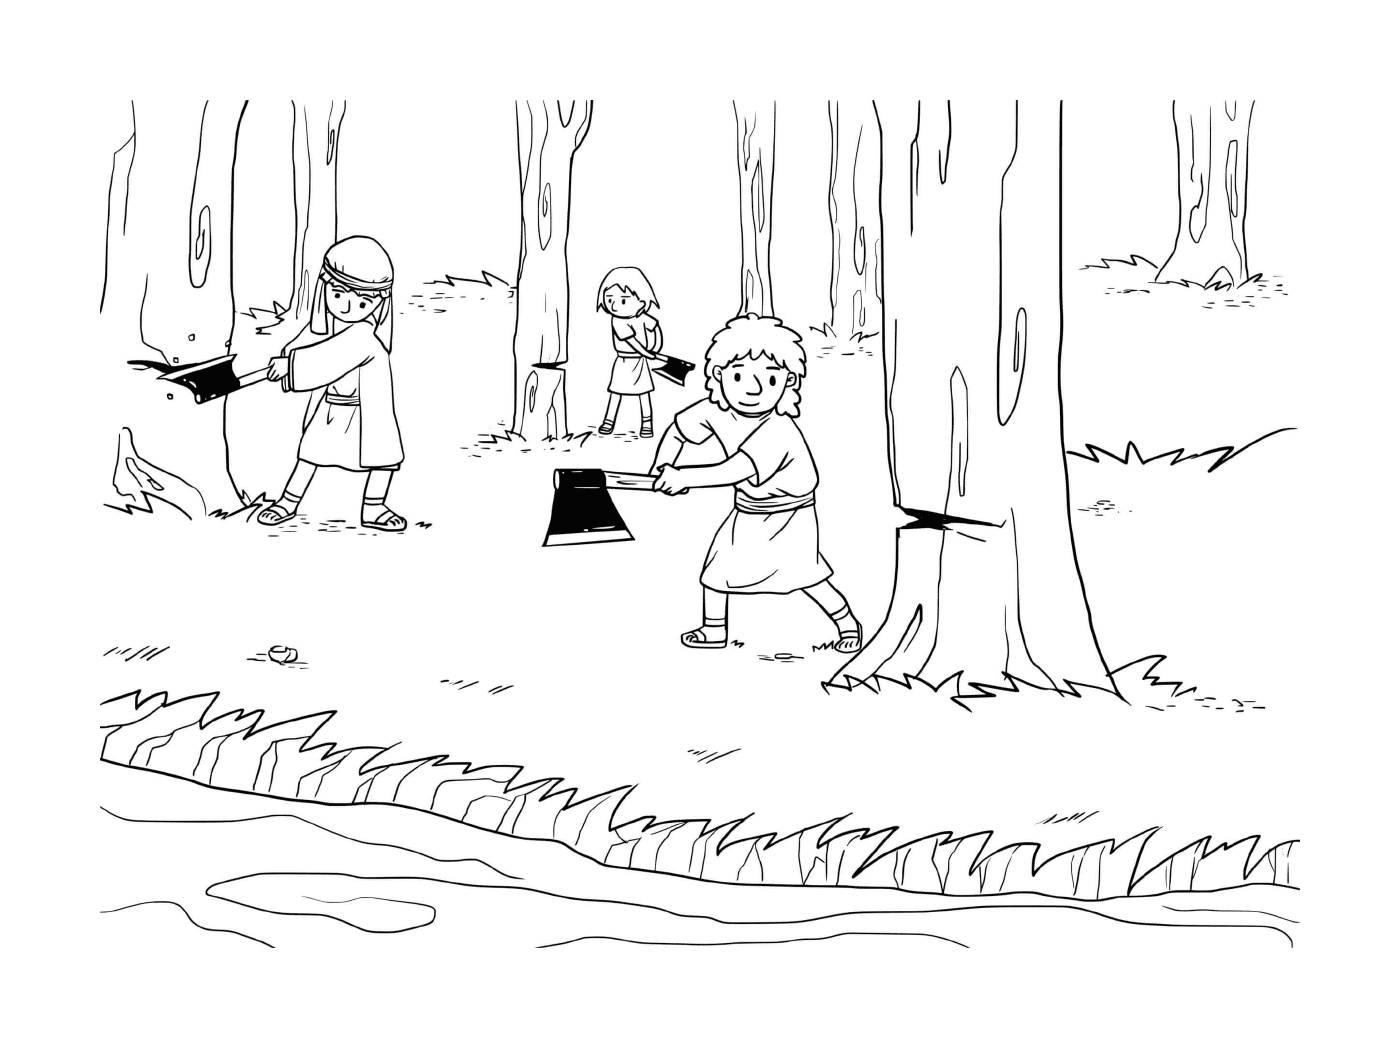   Garçon et deux autres garçons dans les bois 